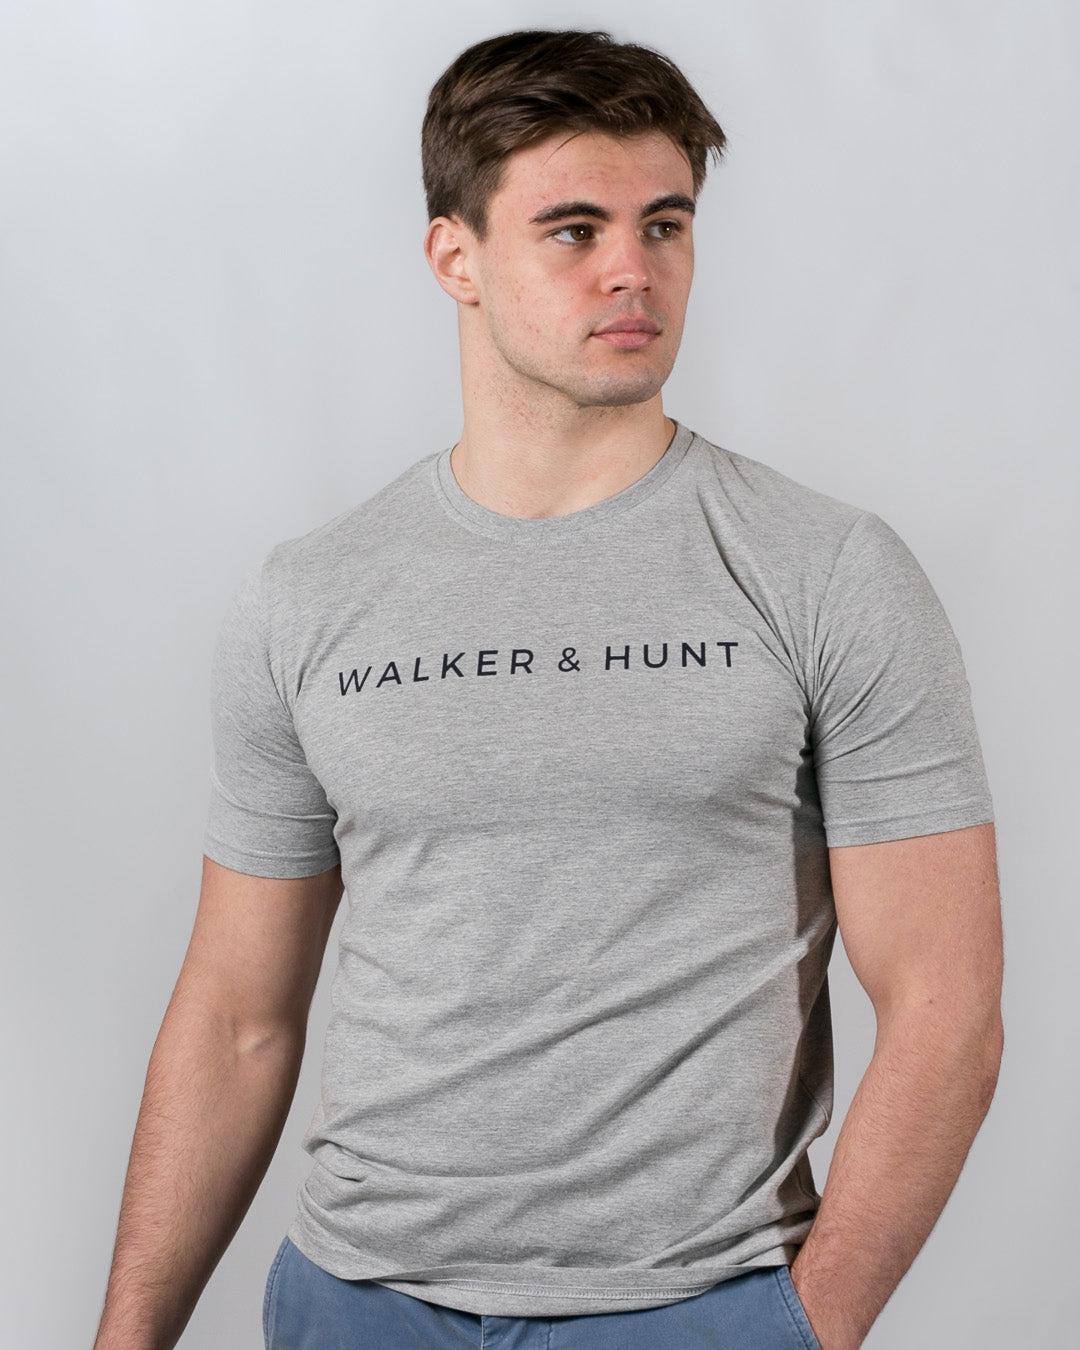 Walker_Hunt-1080x1920-183.jpg